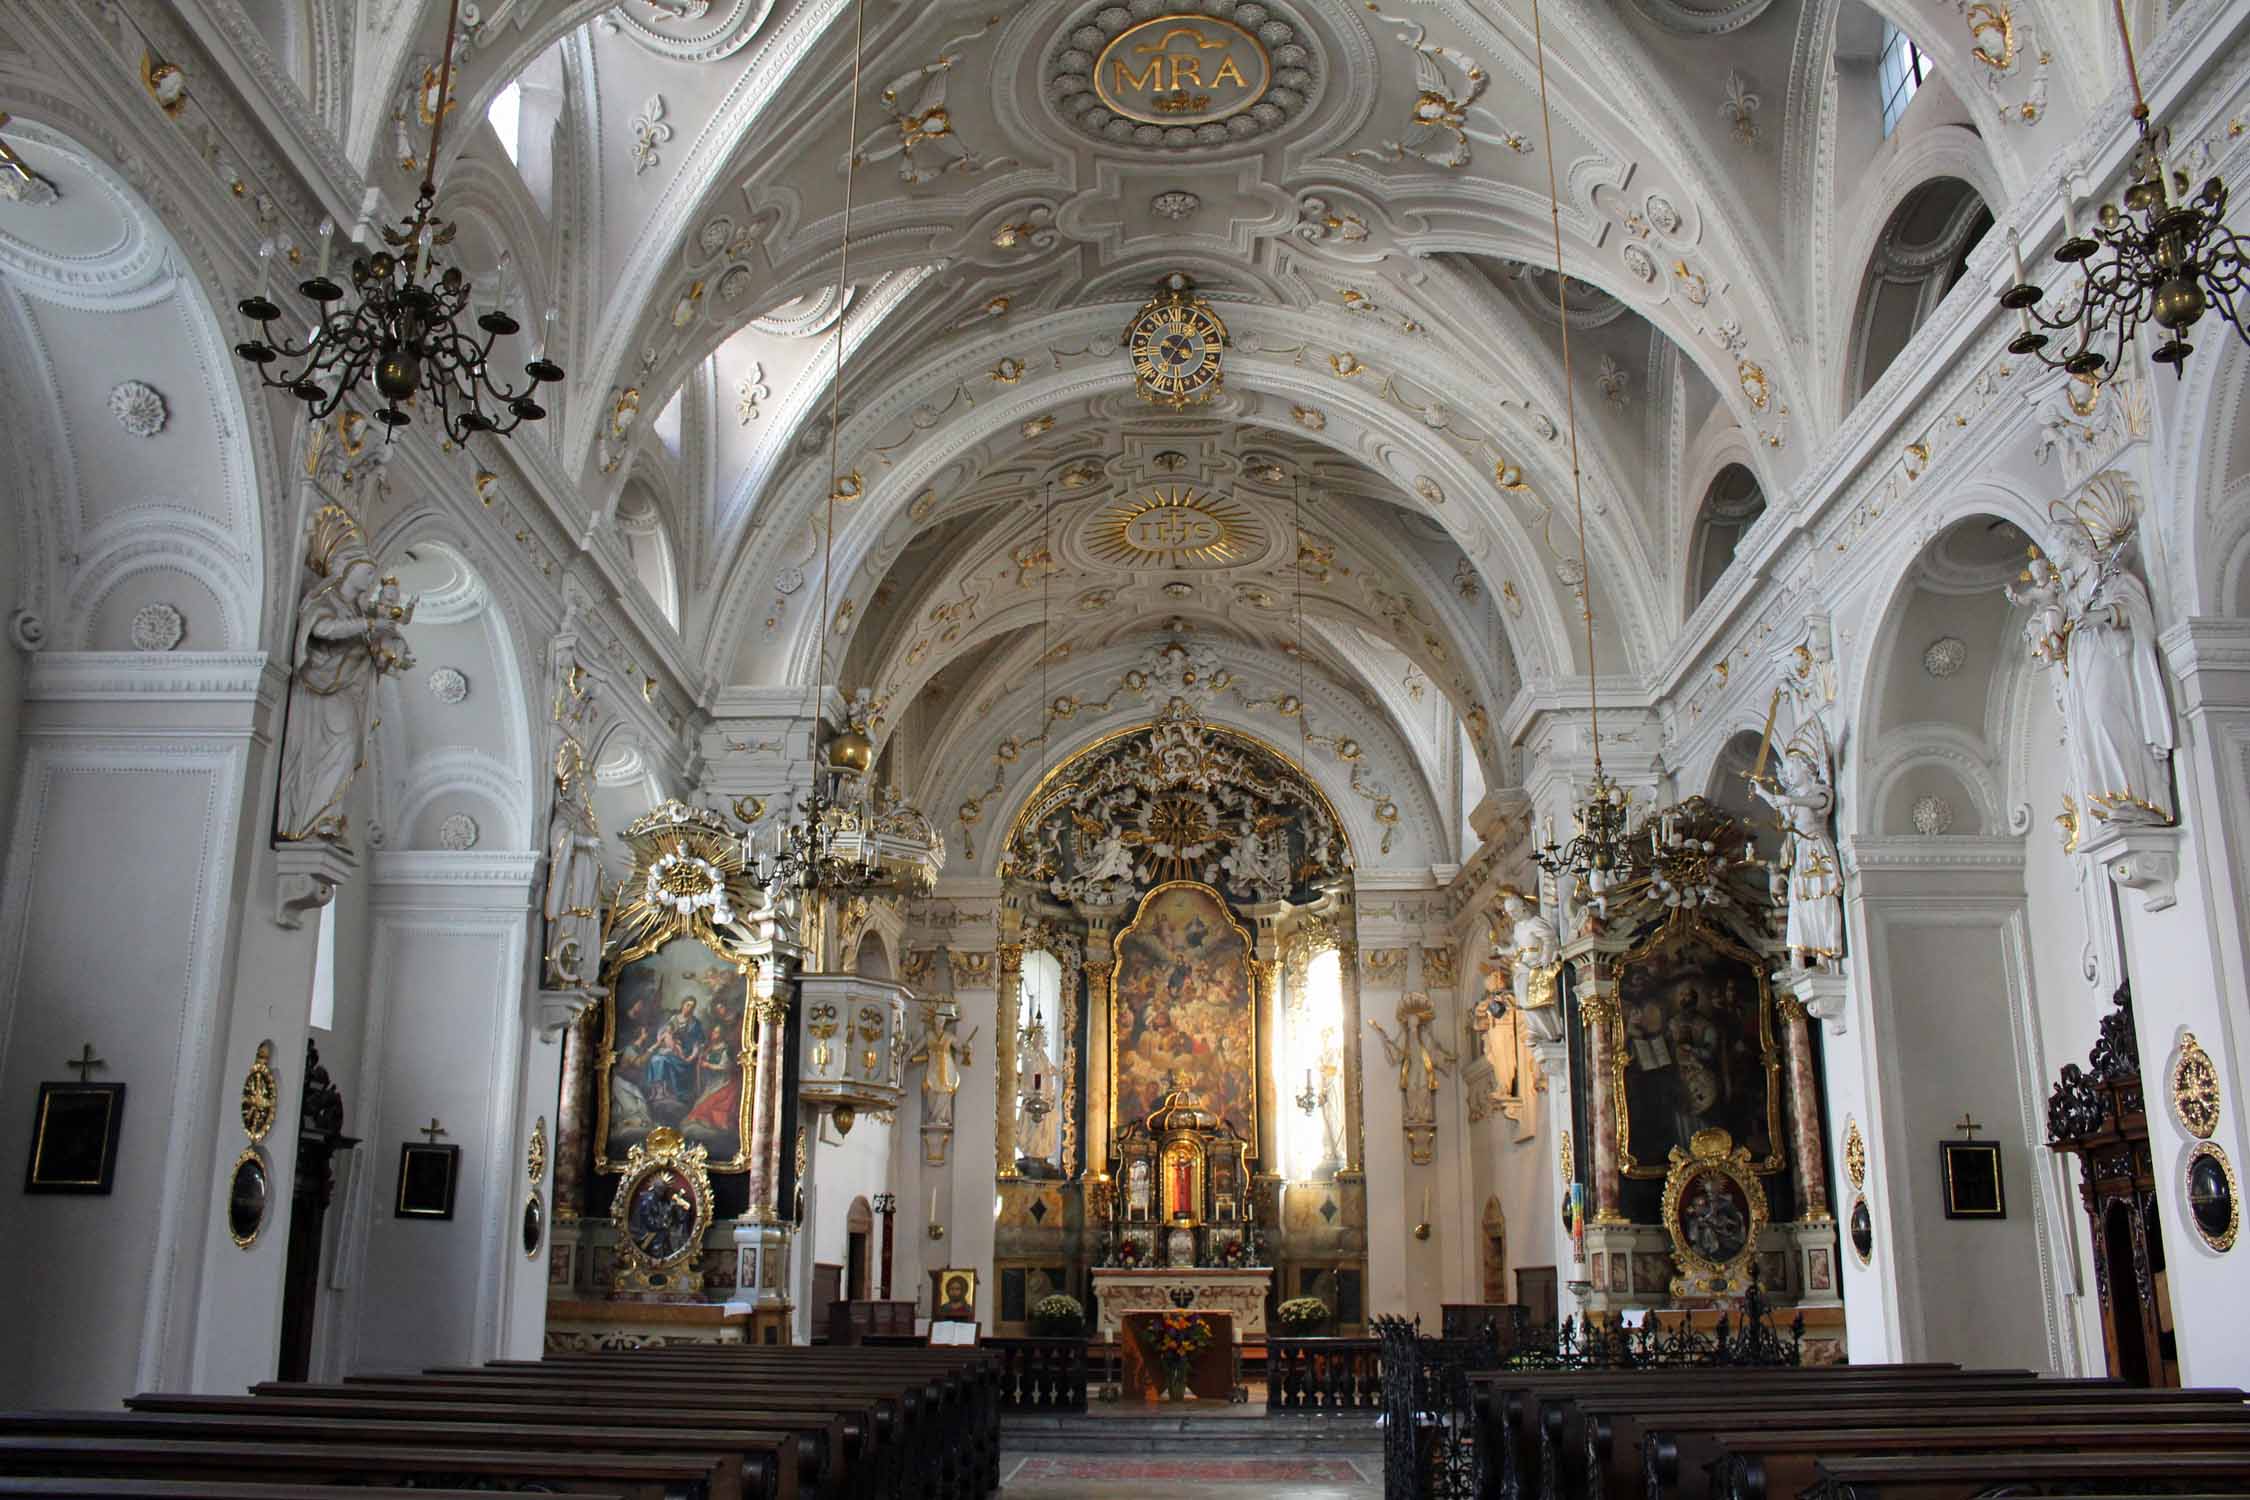 Hall en Tyrol, église des jésuites, intérieur